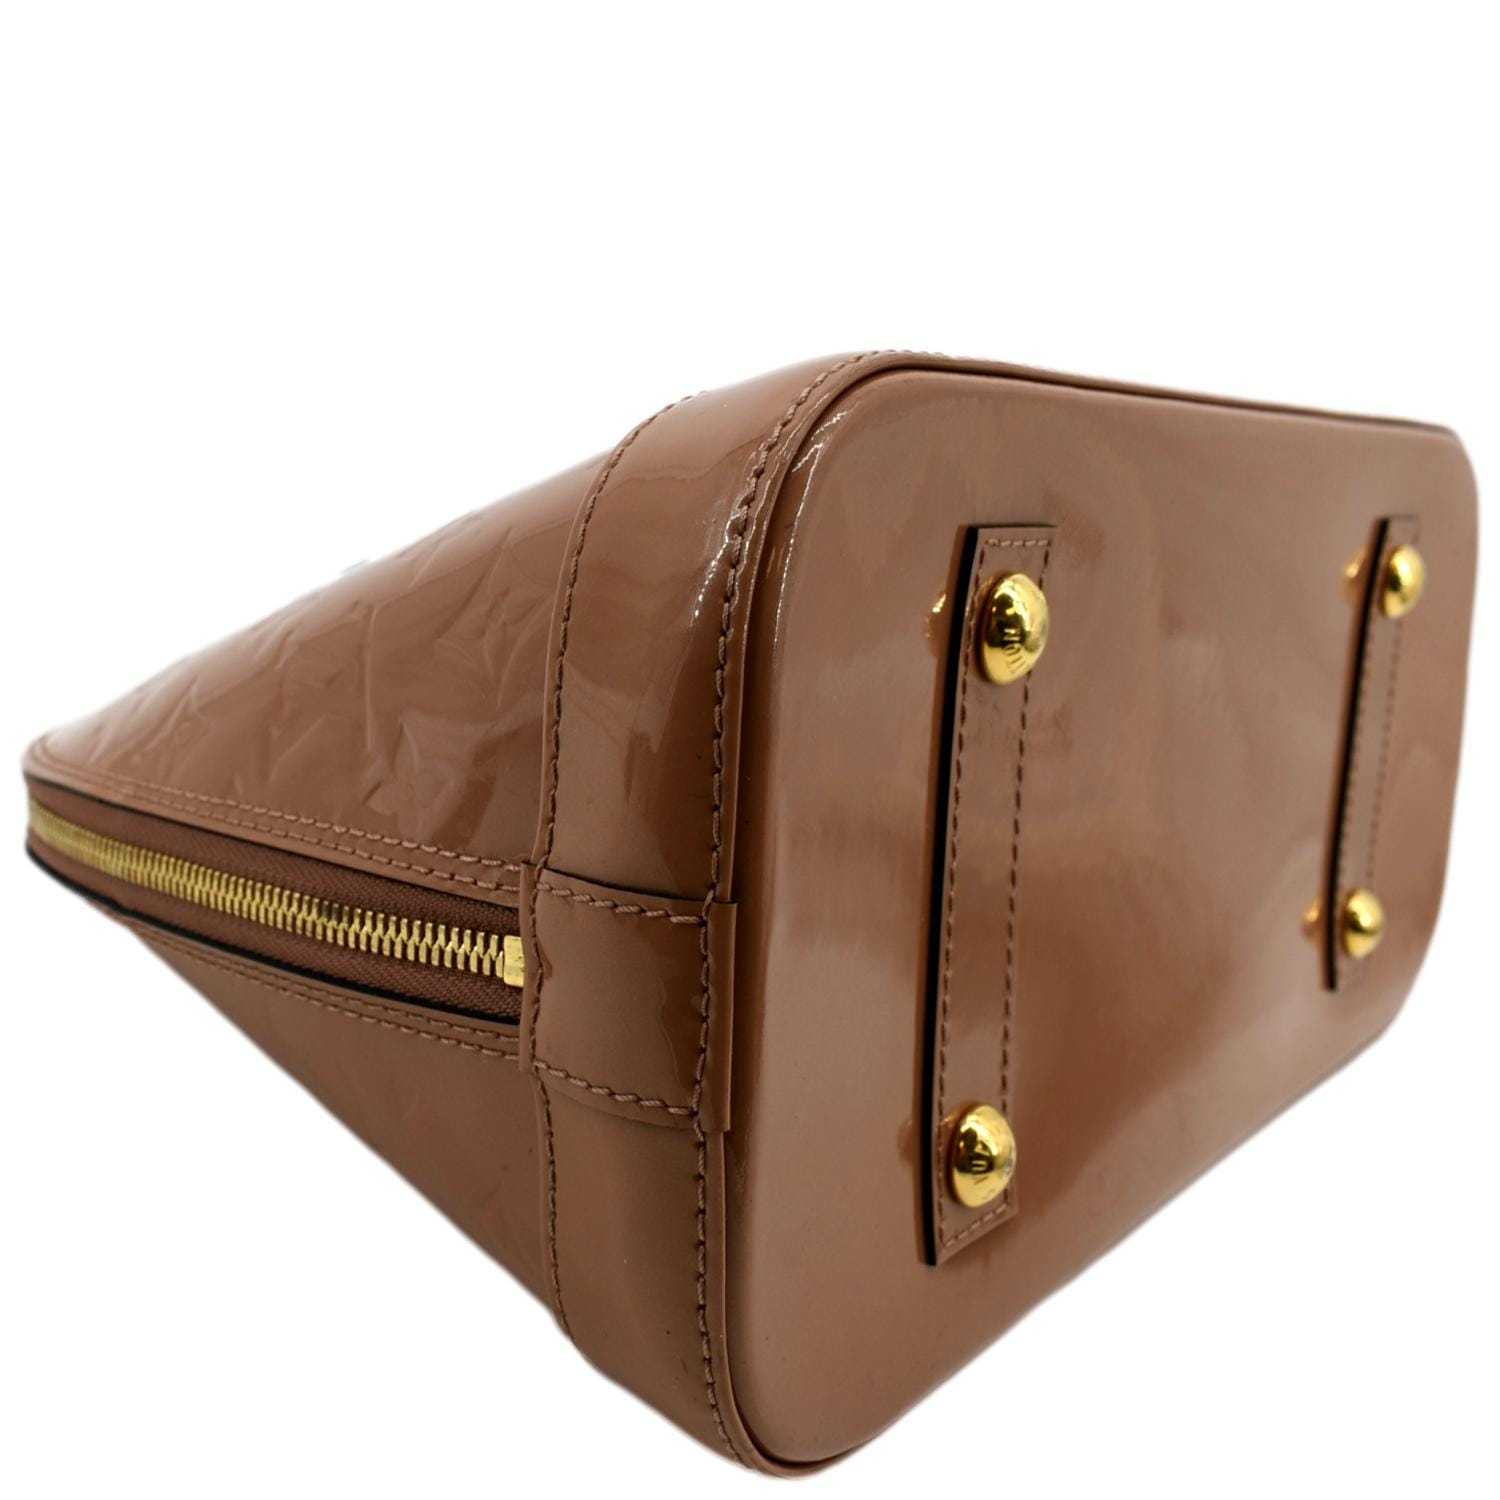 LOUIS VUITTON MONOGRAM Eclipse ALMA Handbag Satchel Purse Bag #1 Rise-on